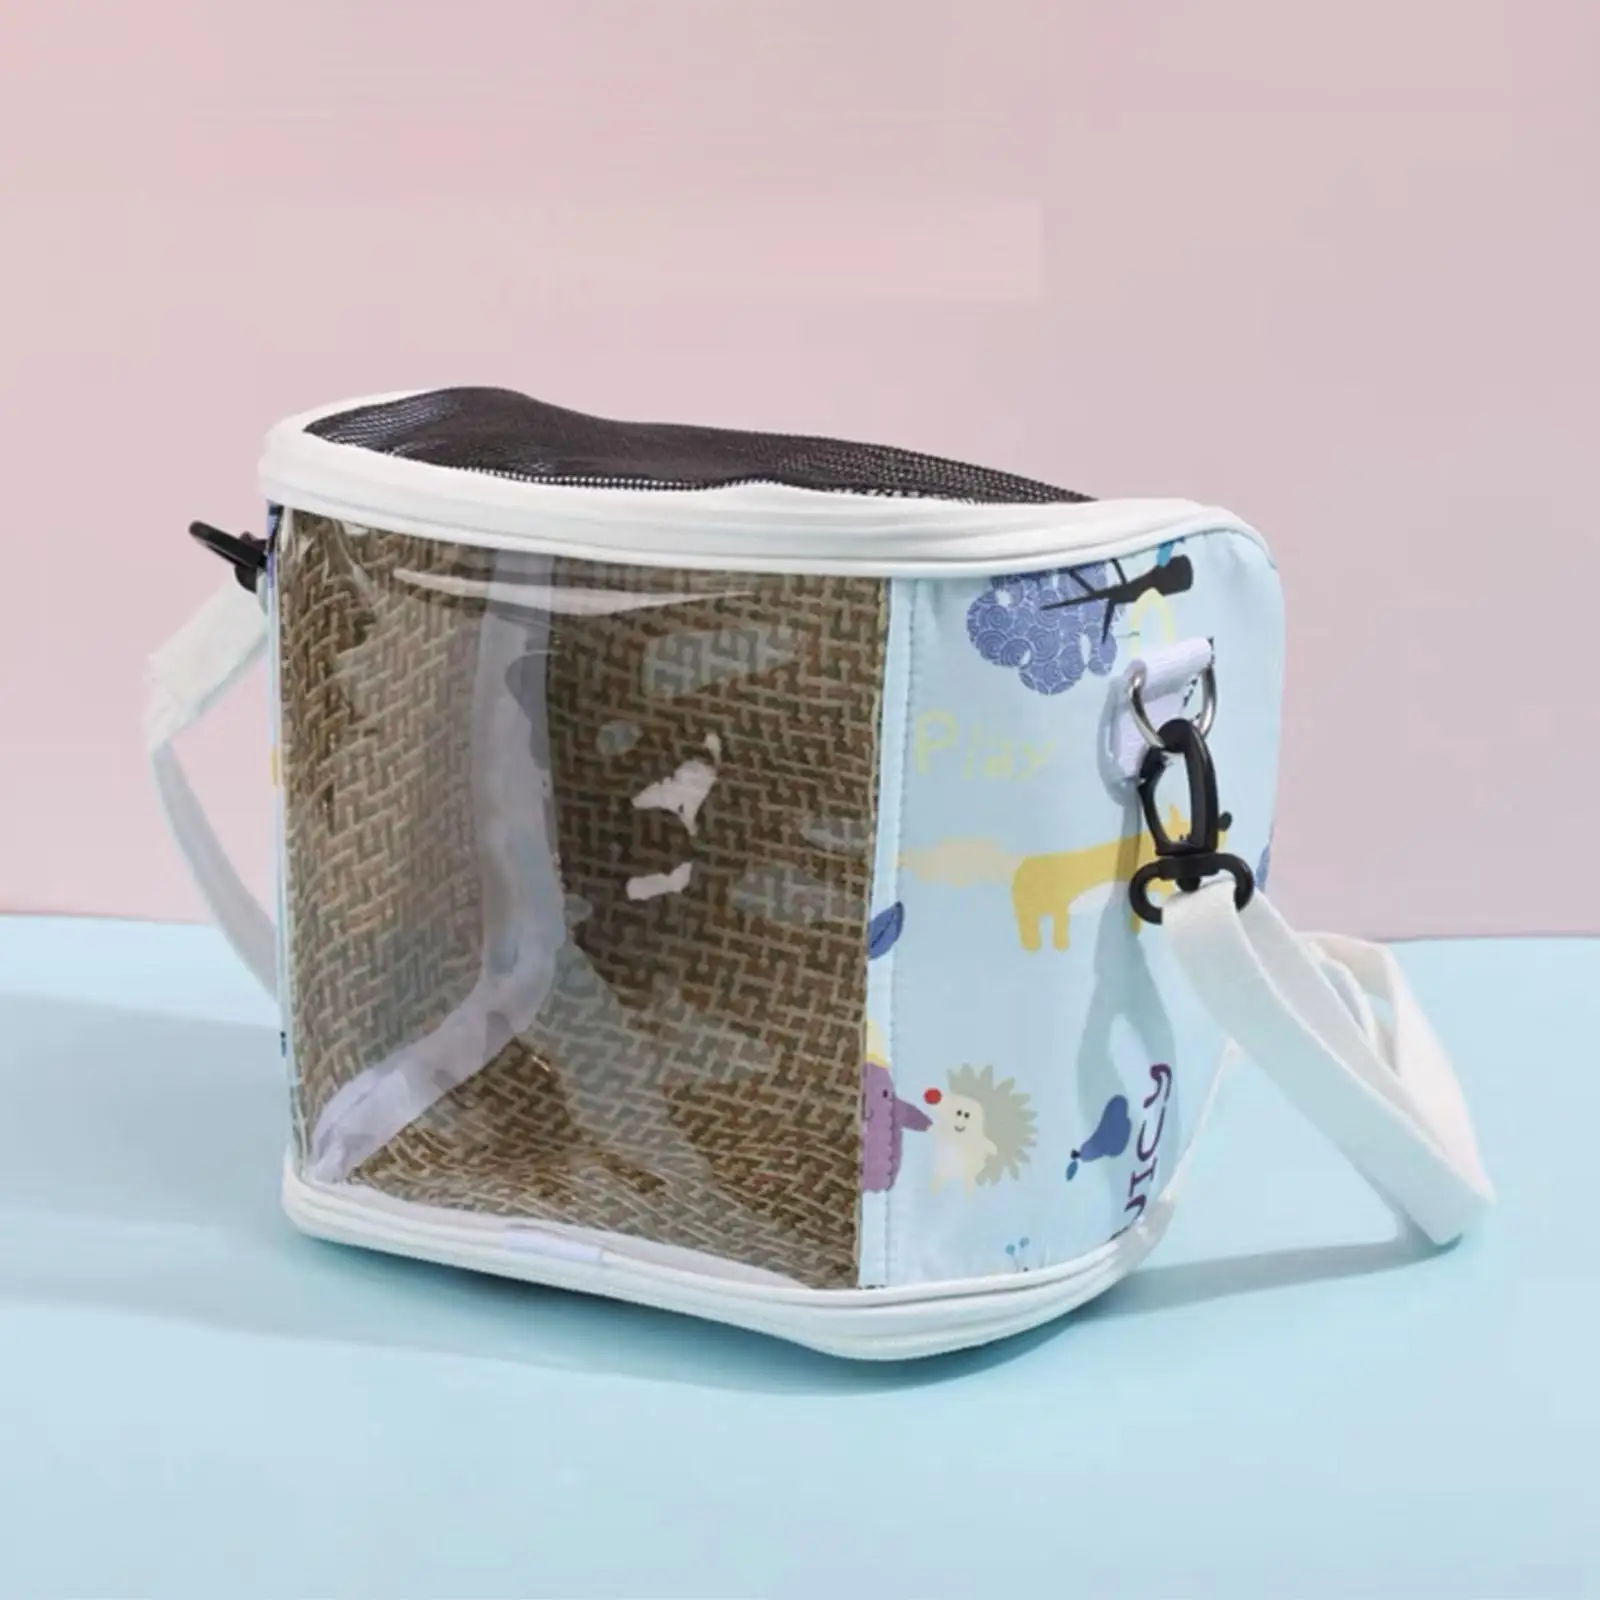 Portable Hamster Shoulder Bag Guinea Pig Travel Bag Adjustable Shoulder Strap Hamster Carrier for Rats Gecko Gerbils Supplies